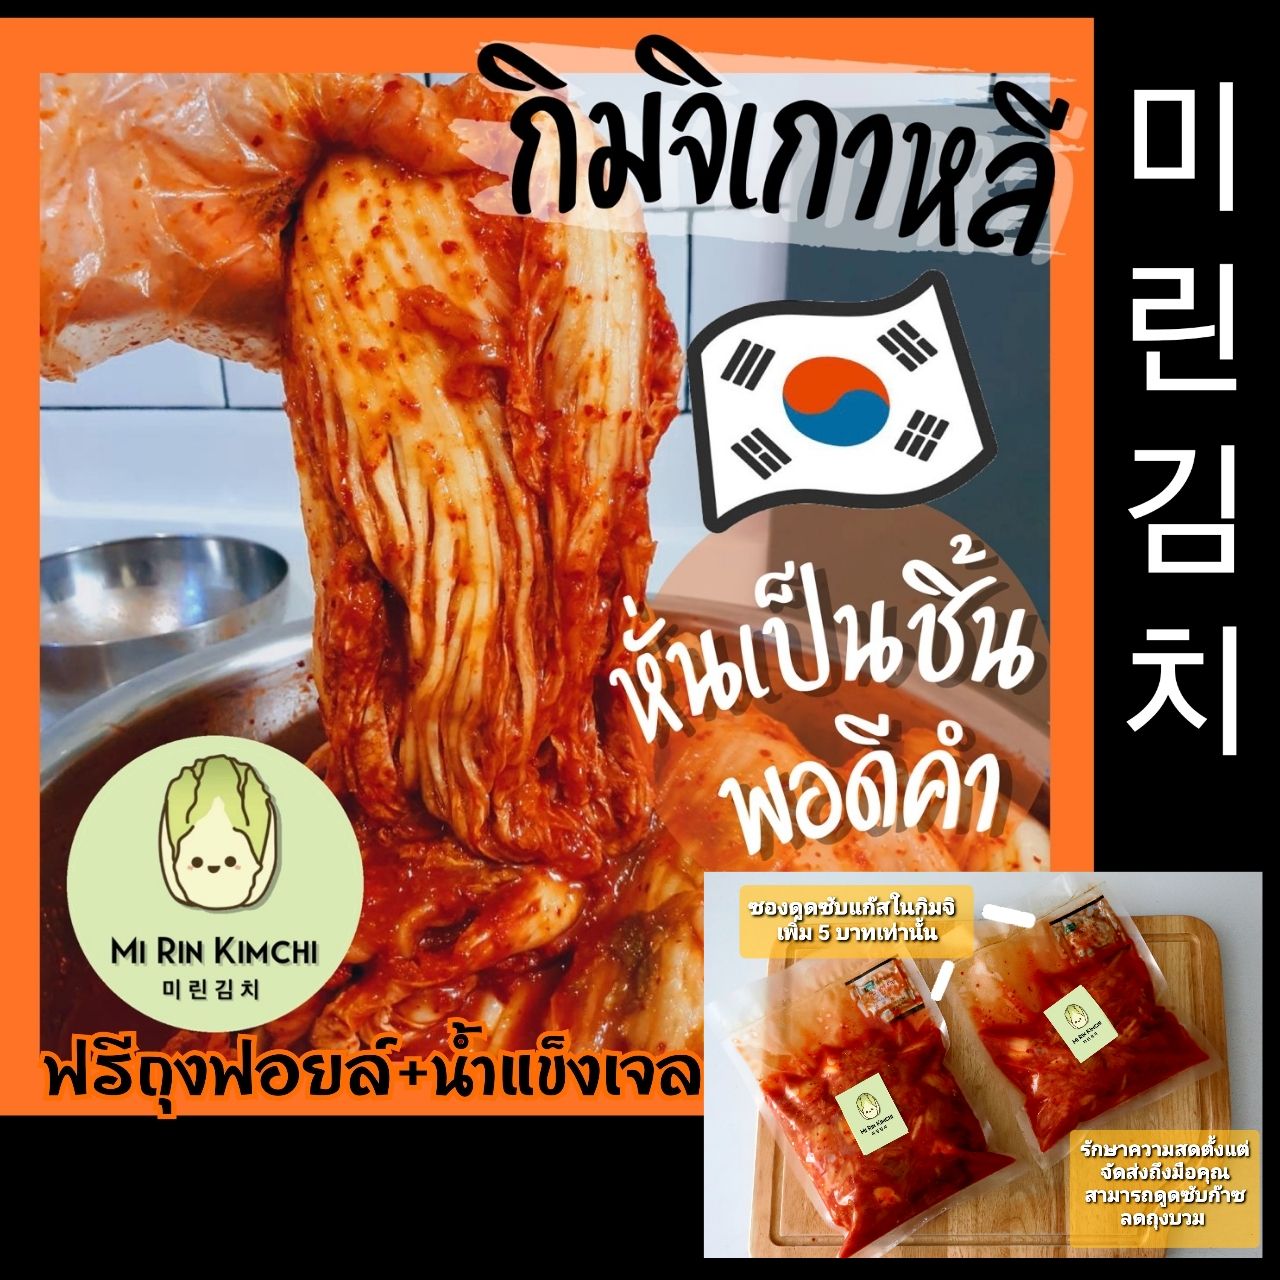 미린김치 กิมจิผักกาดขาว กิมจิเกาหลี ที่ทำเองโดยคนเกาหลีแท้ๆครับ ขนาด 1kg (ส่งKerryเท่านั้น)